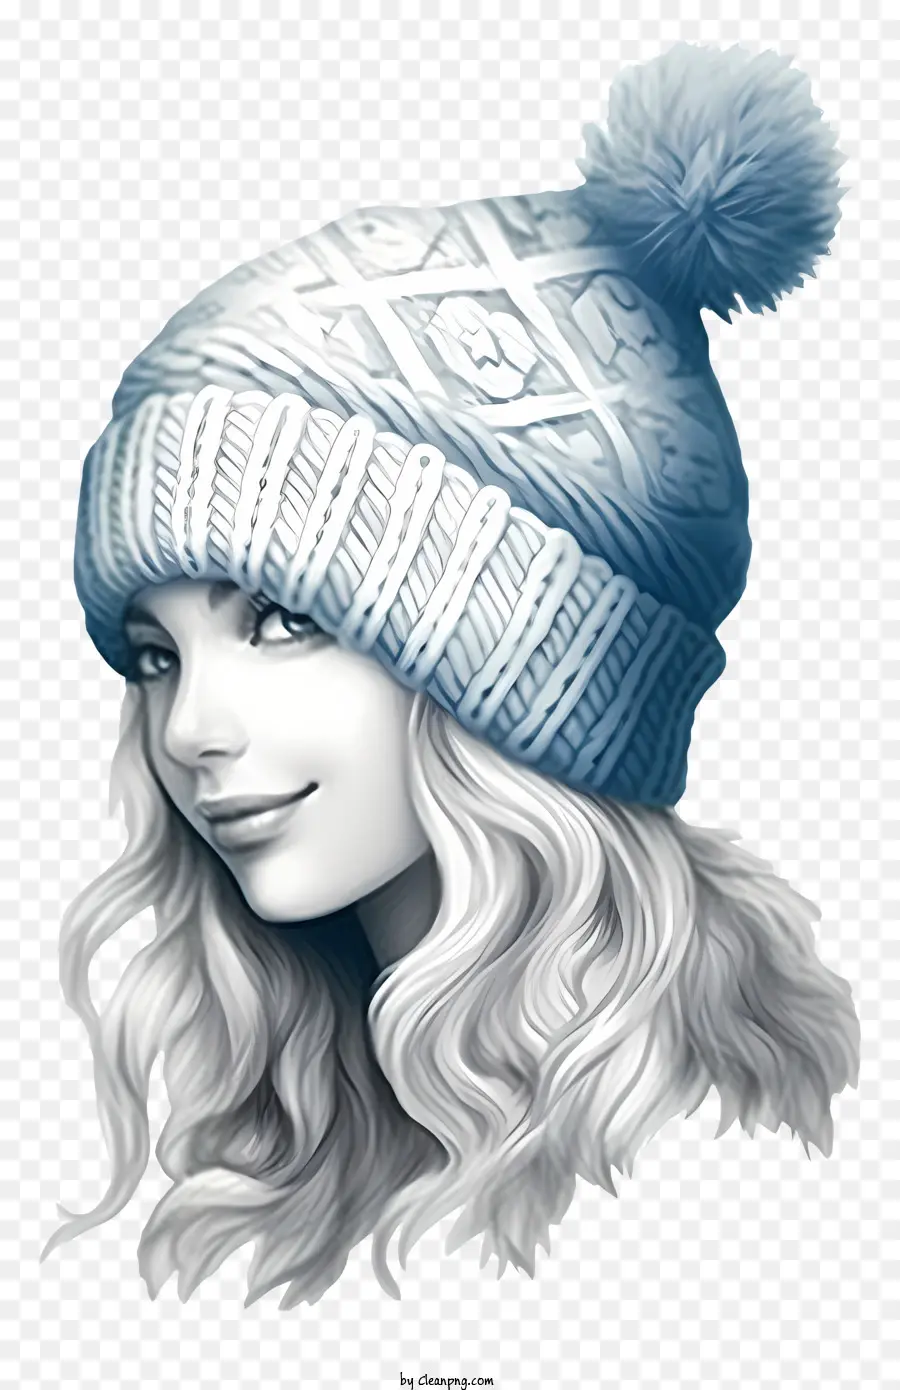 Frau lang blonde Haare weiße Strickhut blauer Pompom lächelnd - Blonde Frau, die einen weißen Hut trägt